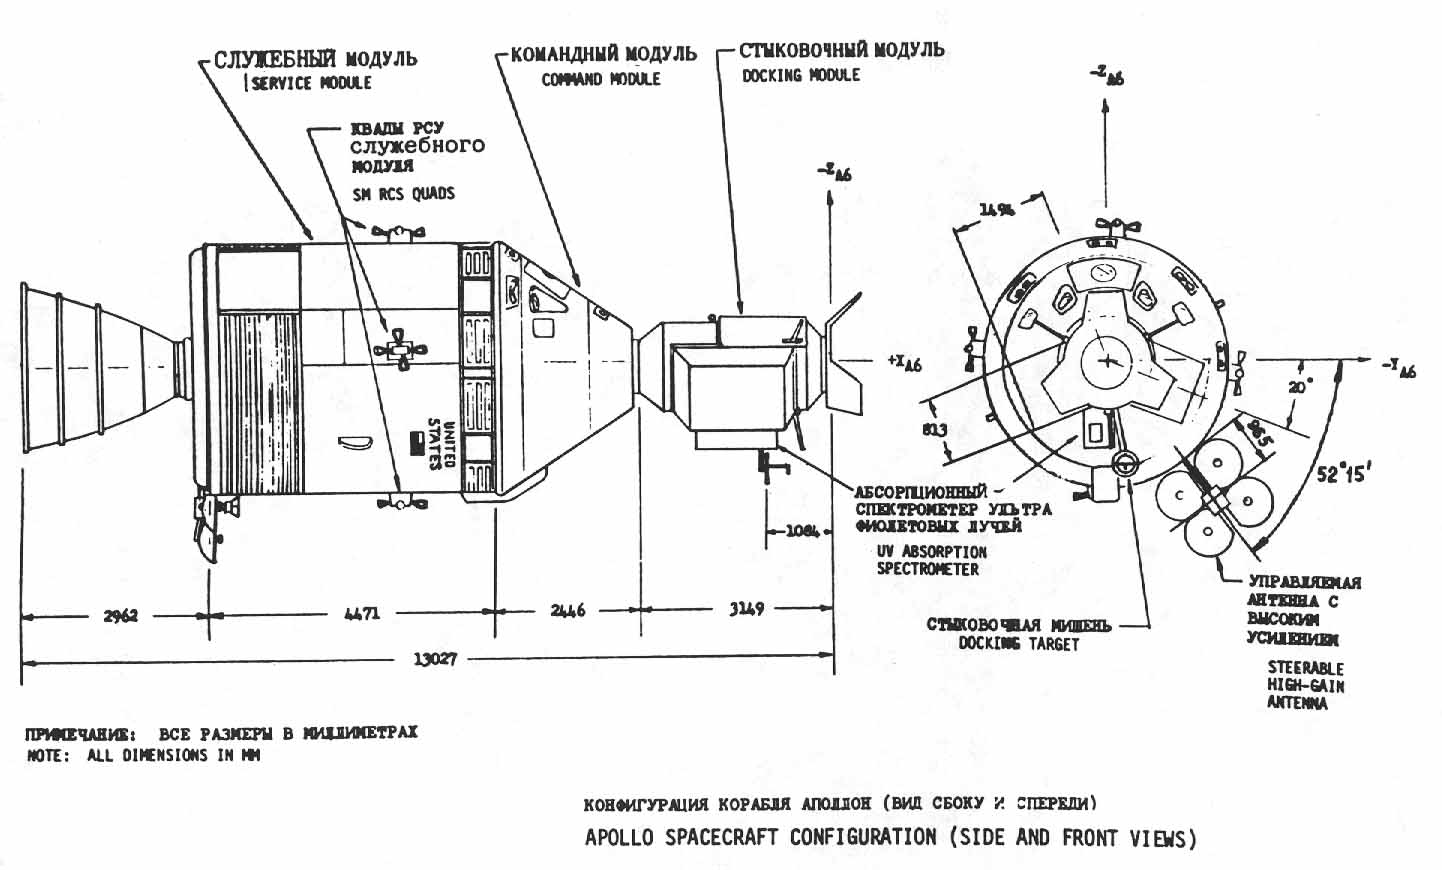 Apollo Spacecraft Configuration